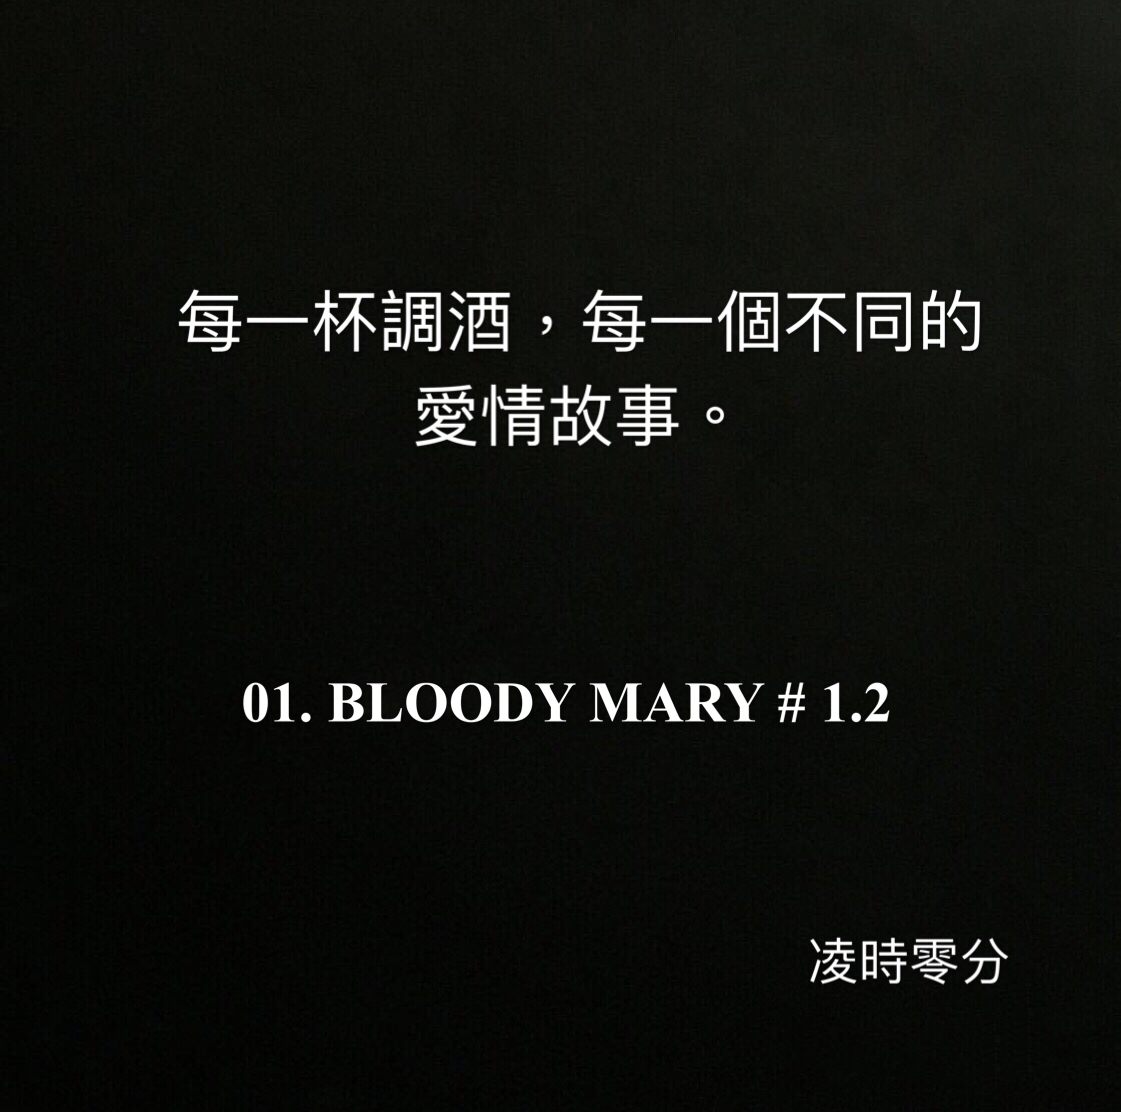 （系列短篇故事）每一杯調酒，每一個不同的愛情故事。01 BLOODY MARY # 1.2